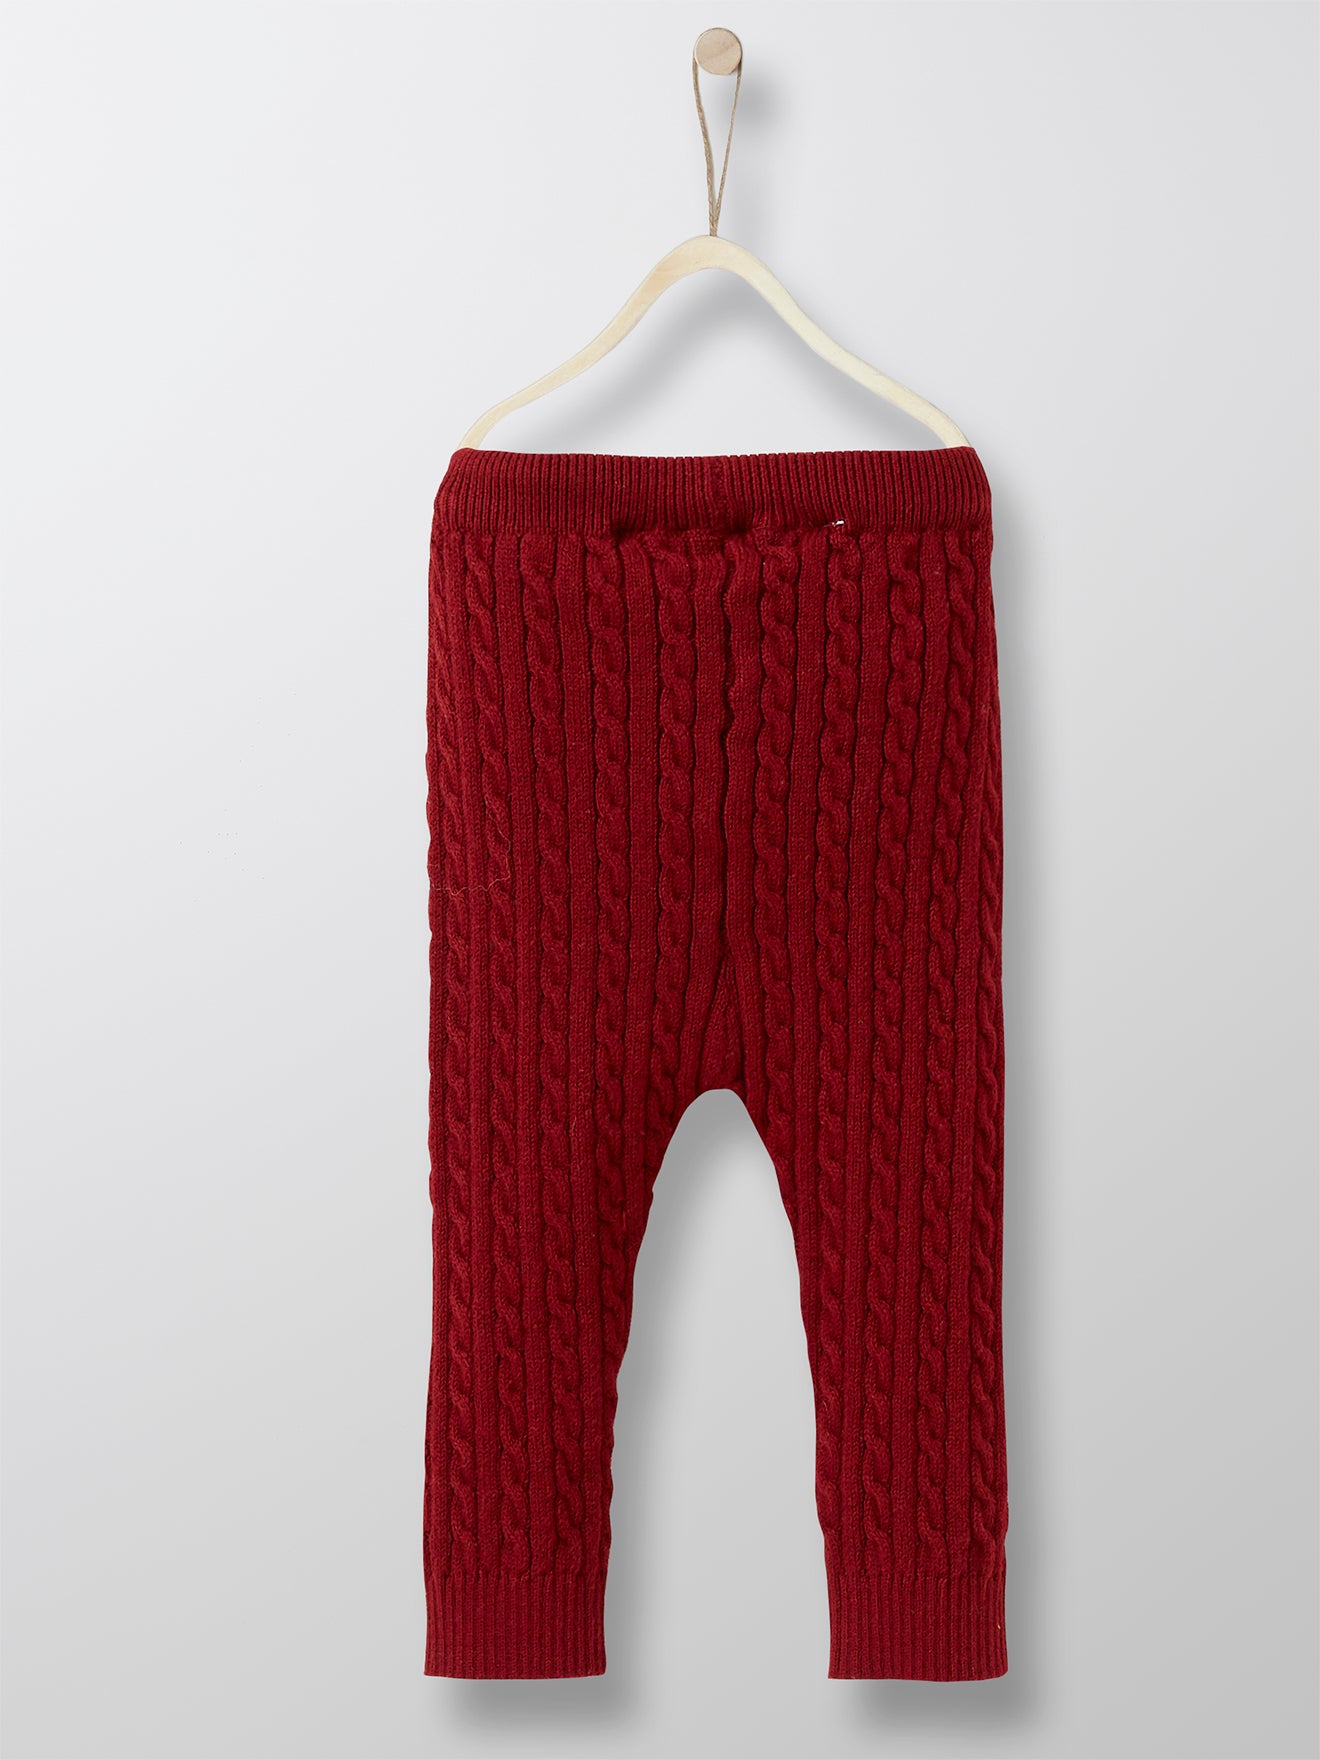 Cyrillus Paris | Baby's Knit Leggings | Dark Red | Size 1Y, 2Y, 3Y